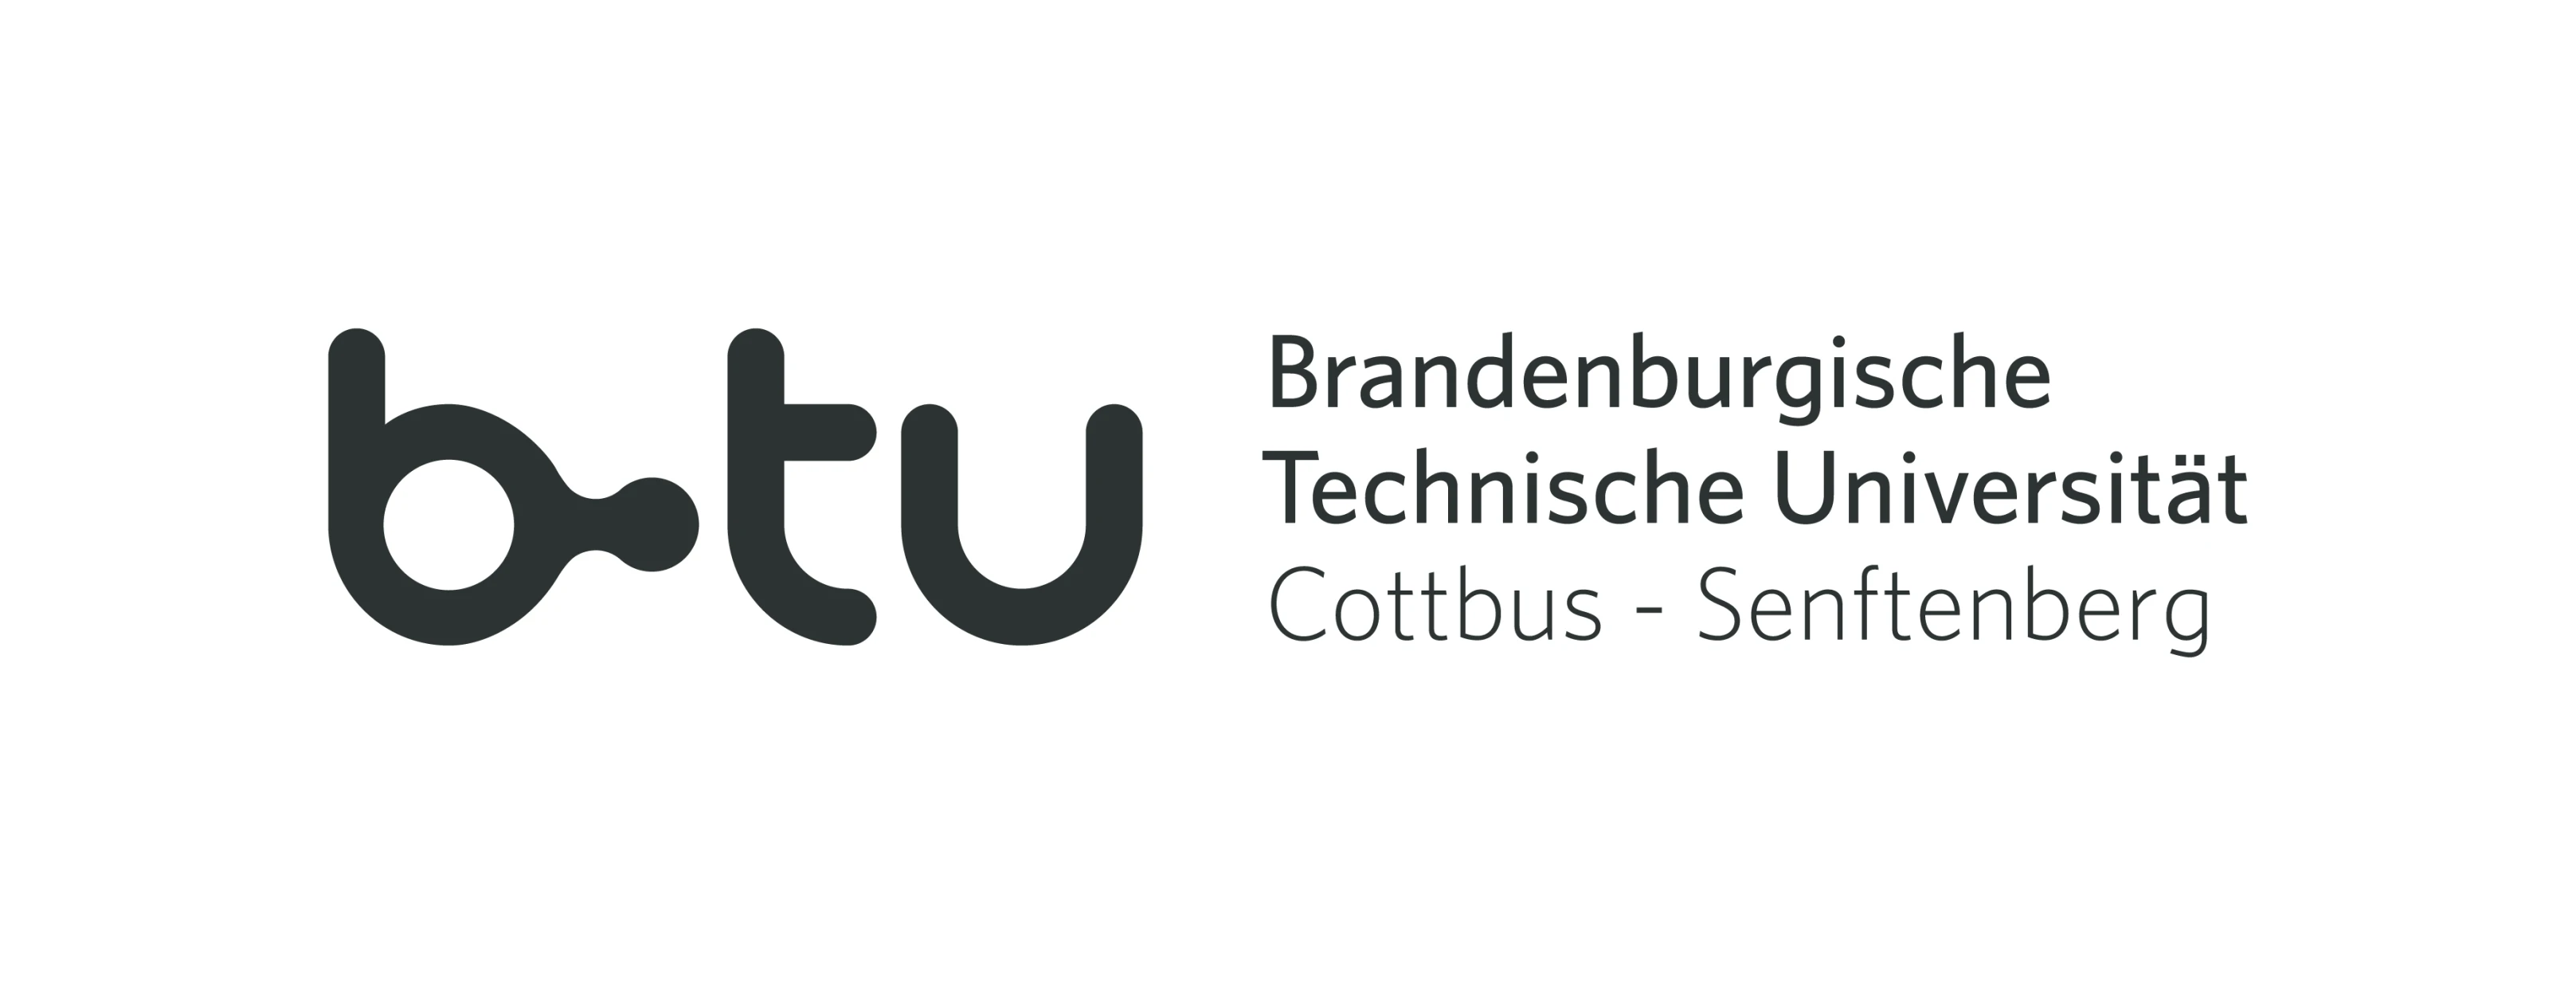 Logo of BTU Cottbus-Senftenberg